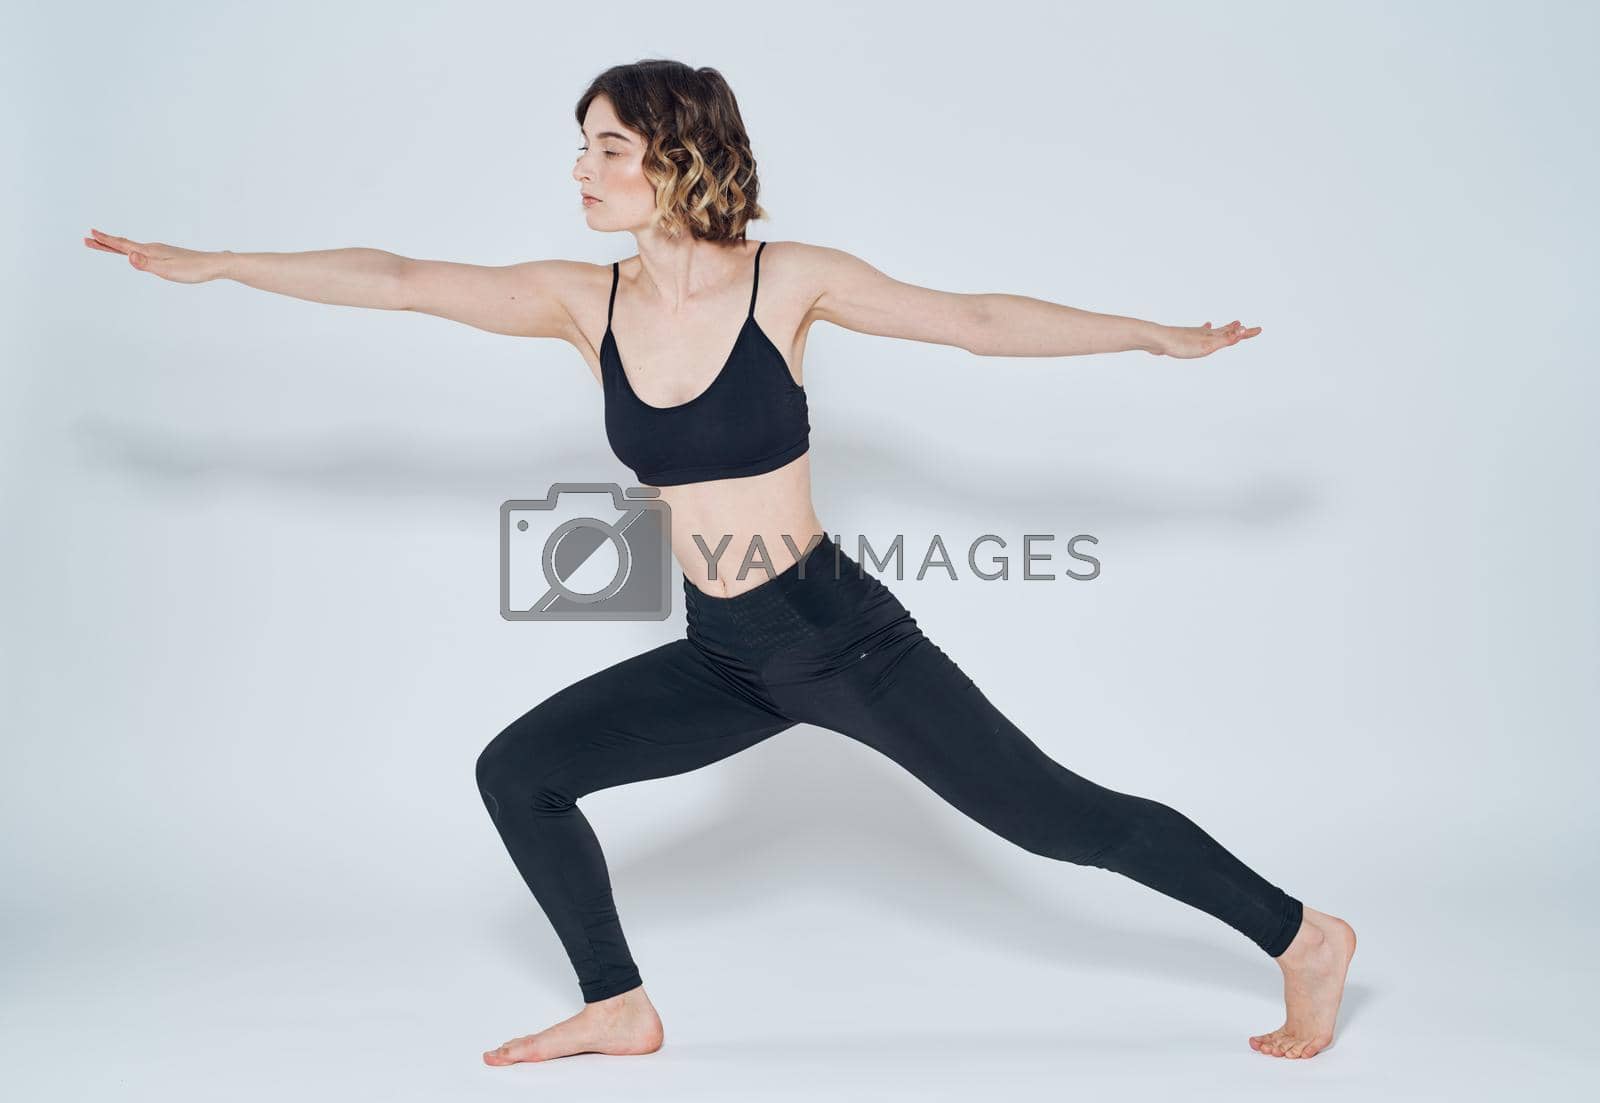 Exercises slim woman yoga asana light background meditation model. High quality photo